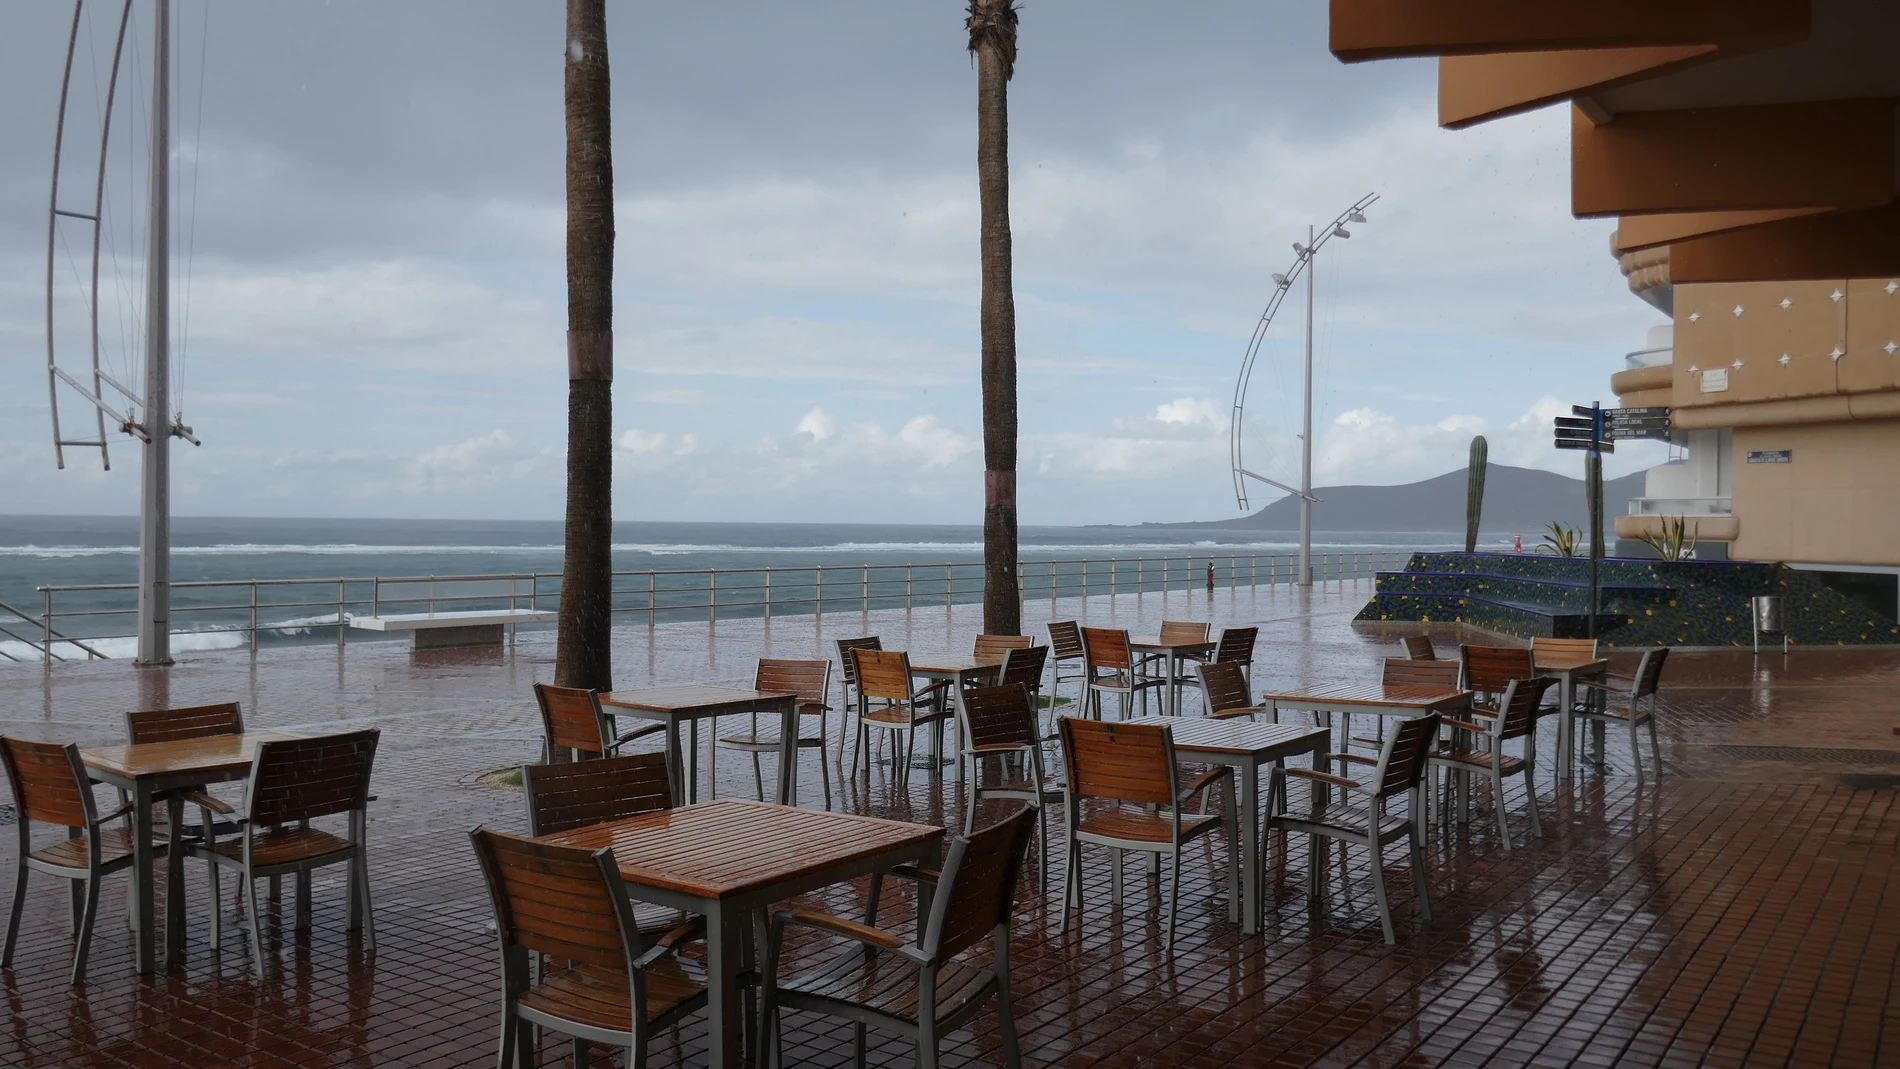 La terraza de un bar, bajo la lluvia en Las Palmas de Gran Canaria, en Canarias (España). Europa Press